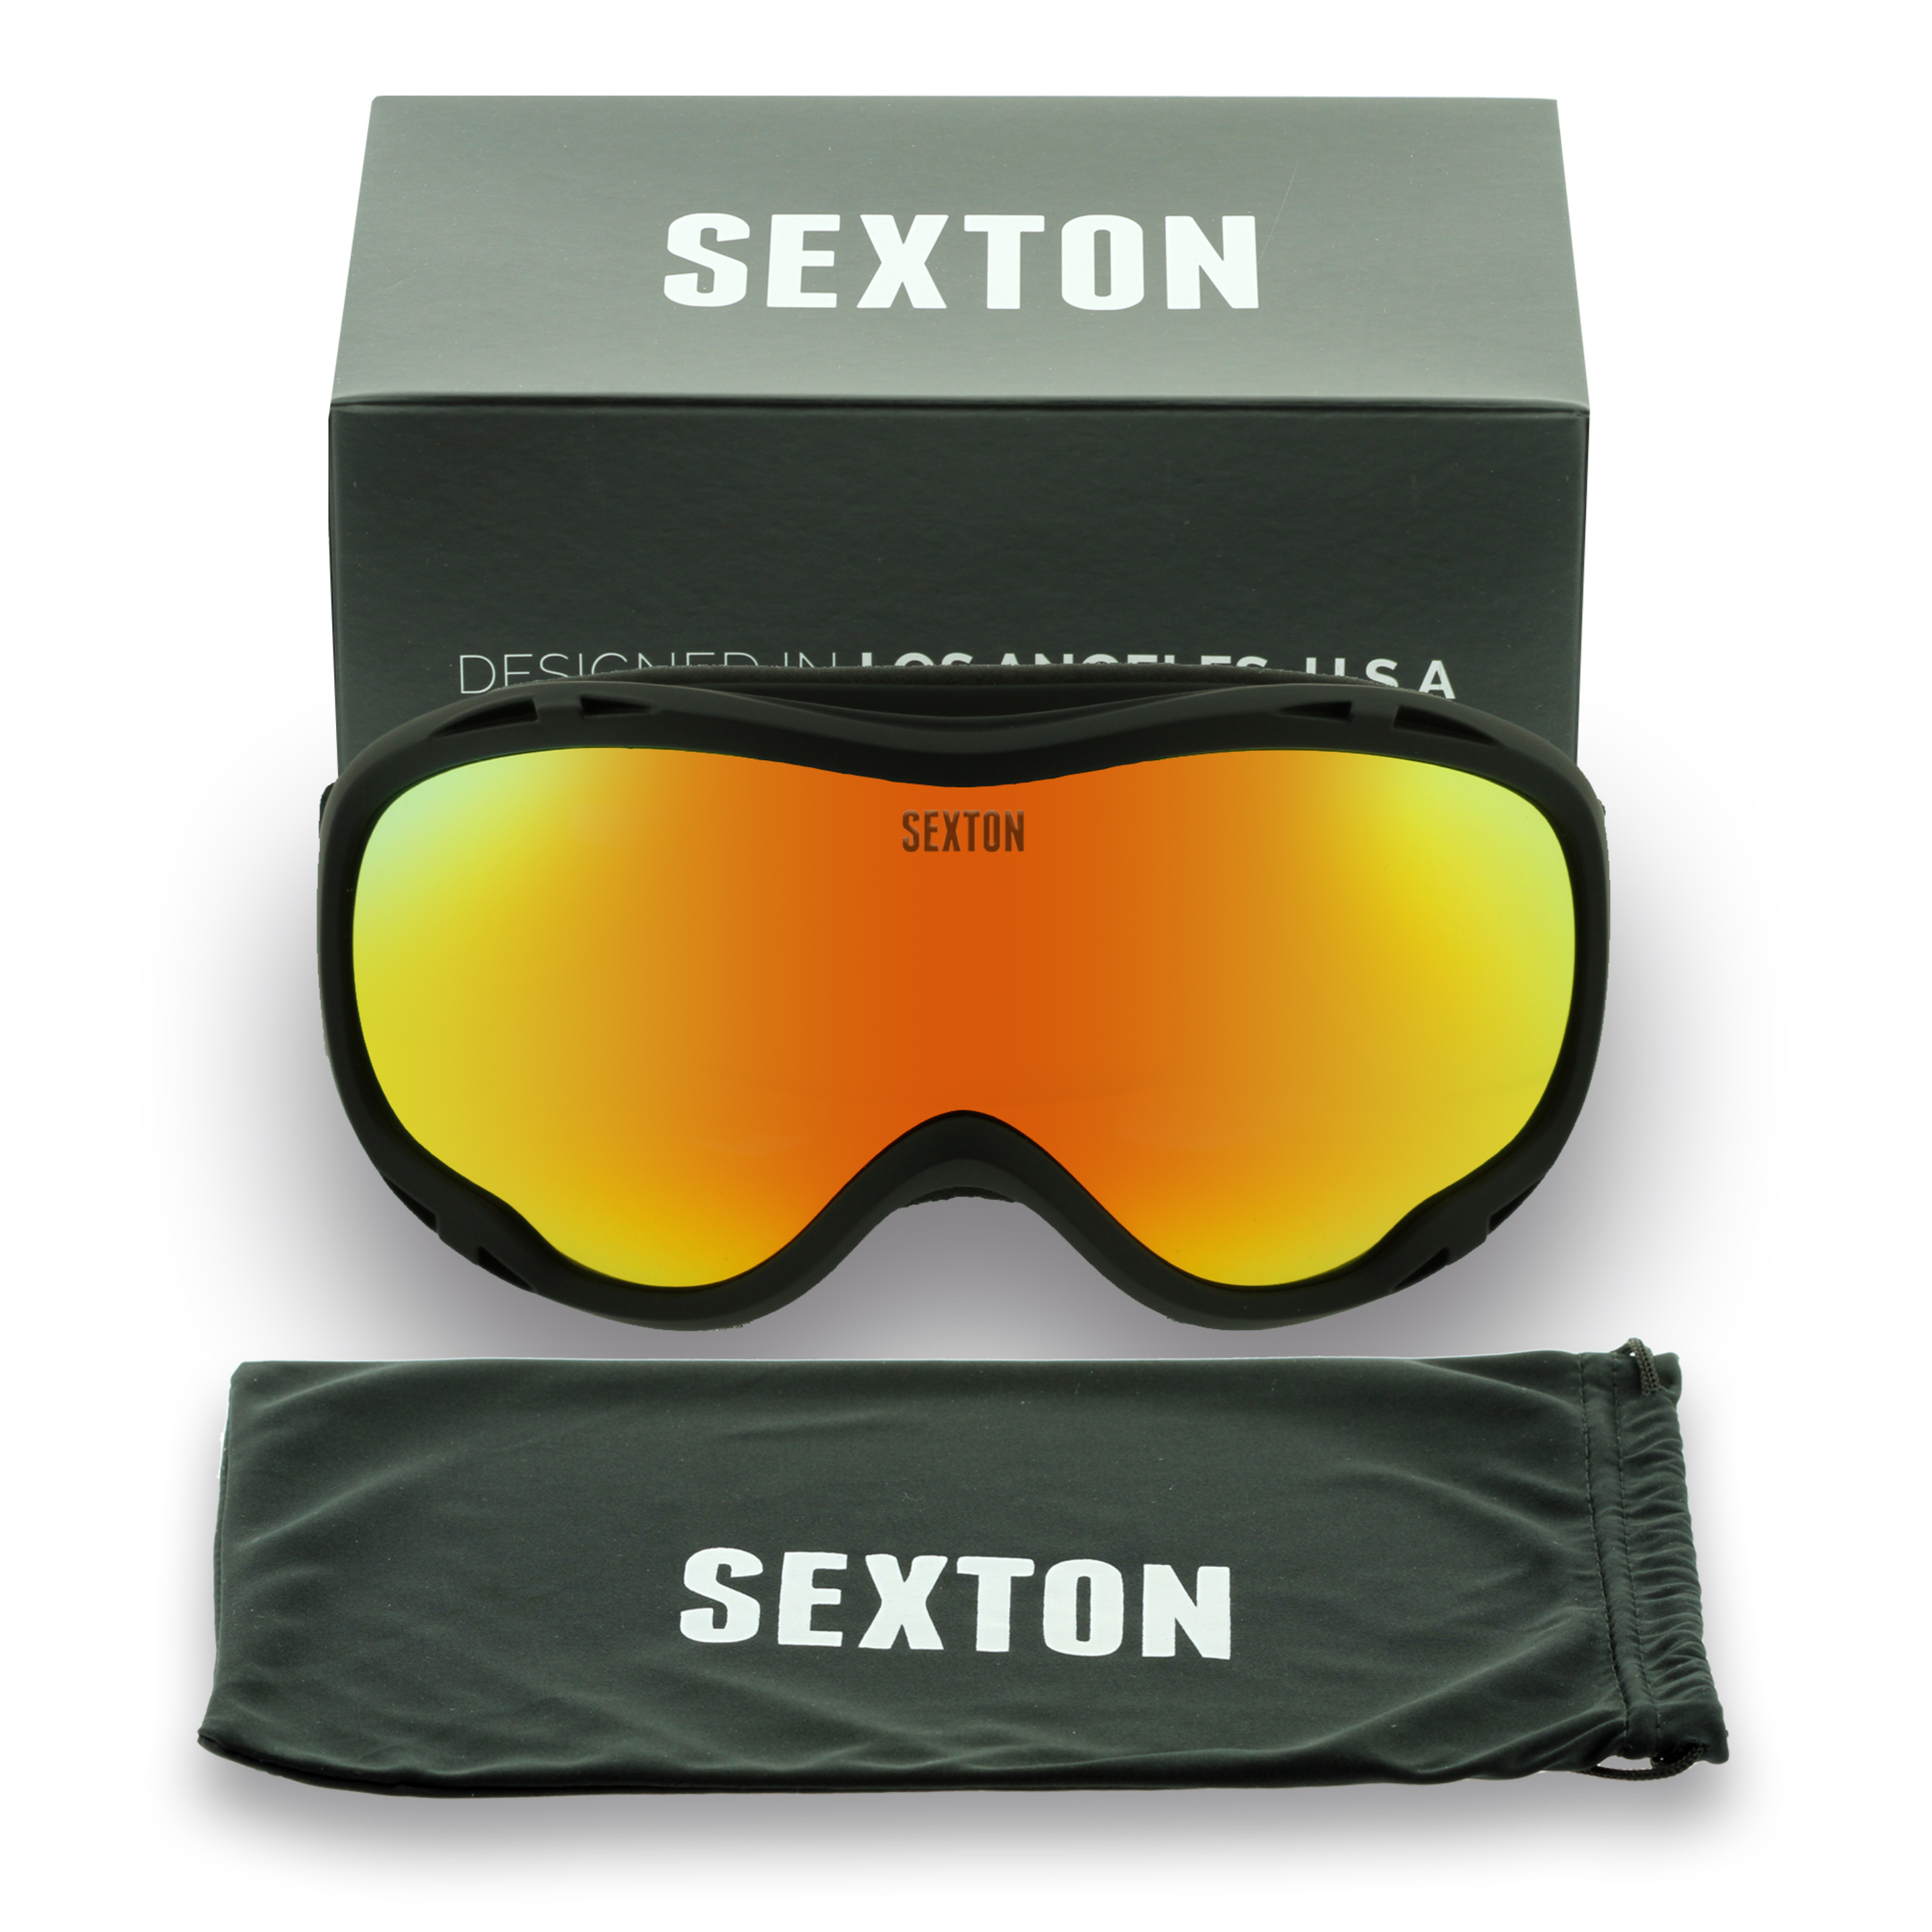 Gafas De Snow Sexton  Ski Mask - Amarillo - Gafas De Snow  MKP